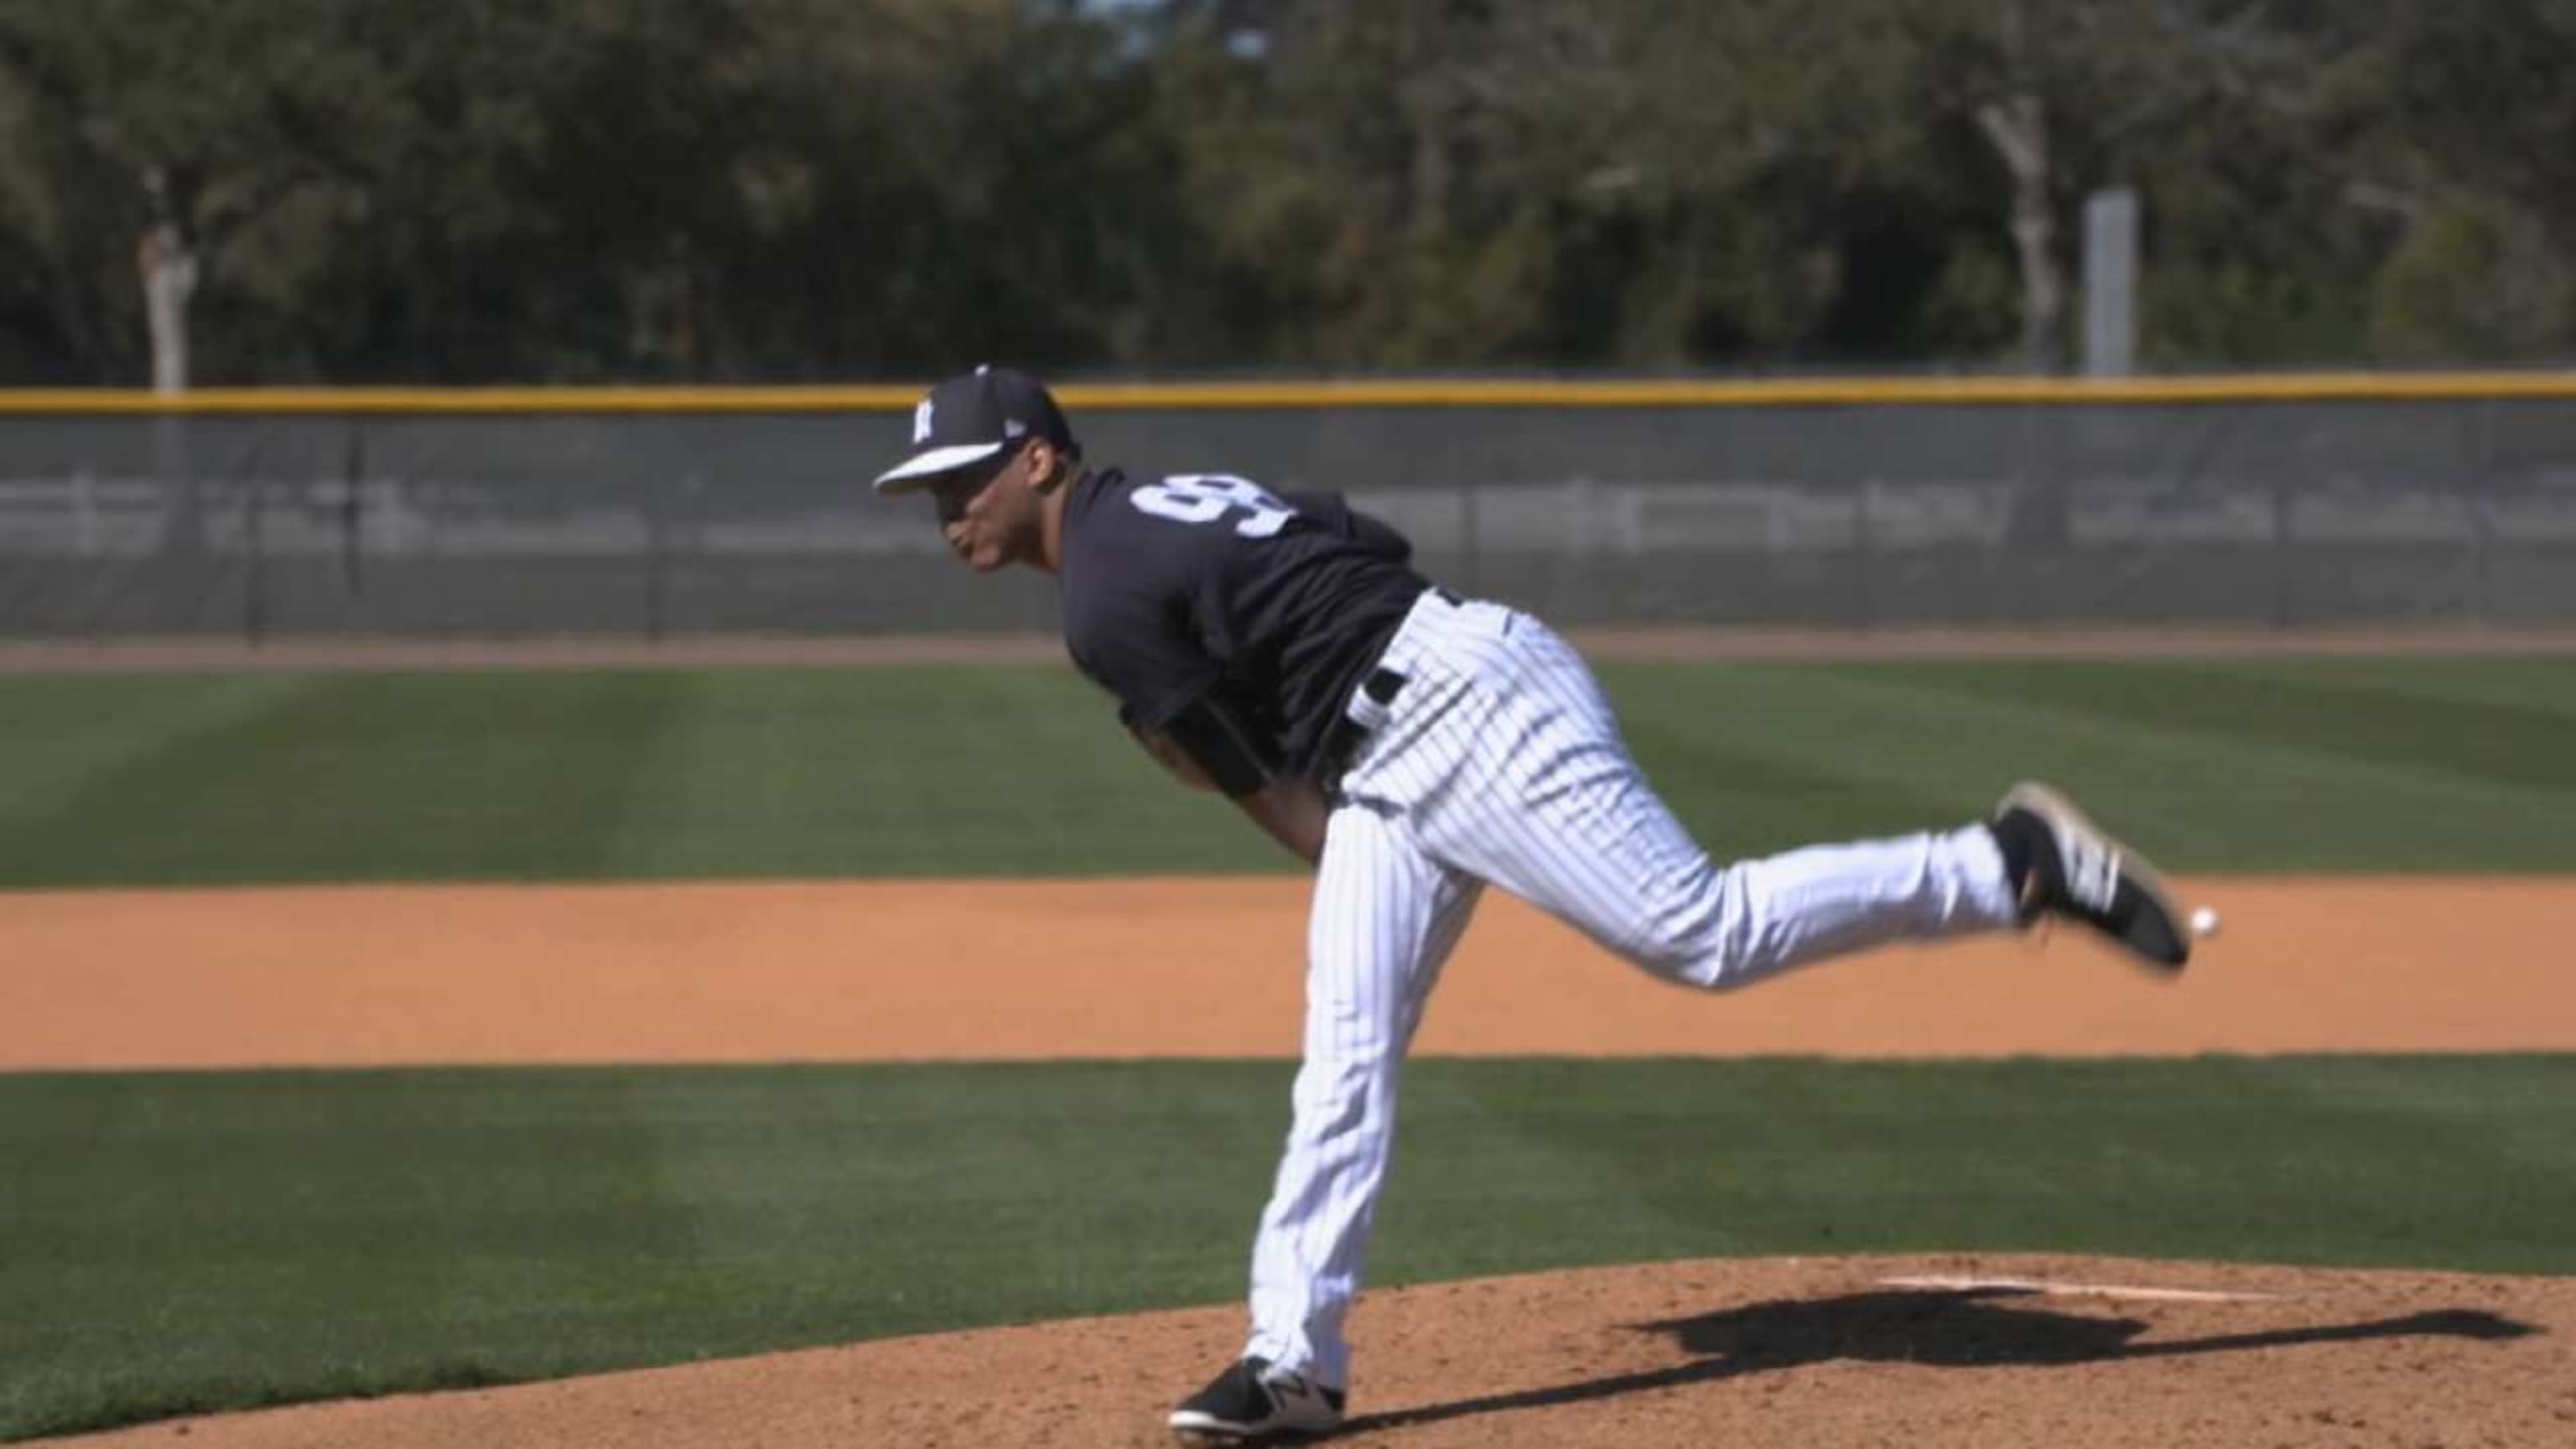 Gleyber Torres named top shortstop prospect by MLB Pipeline